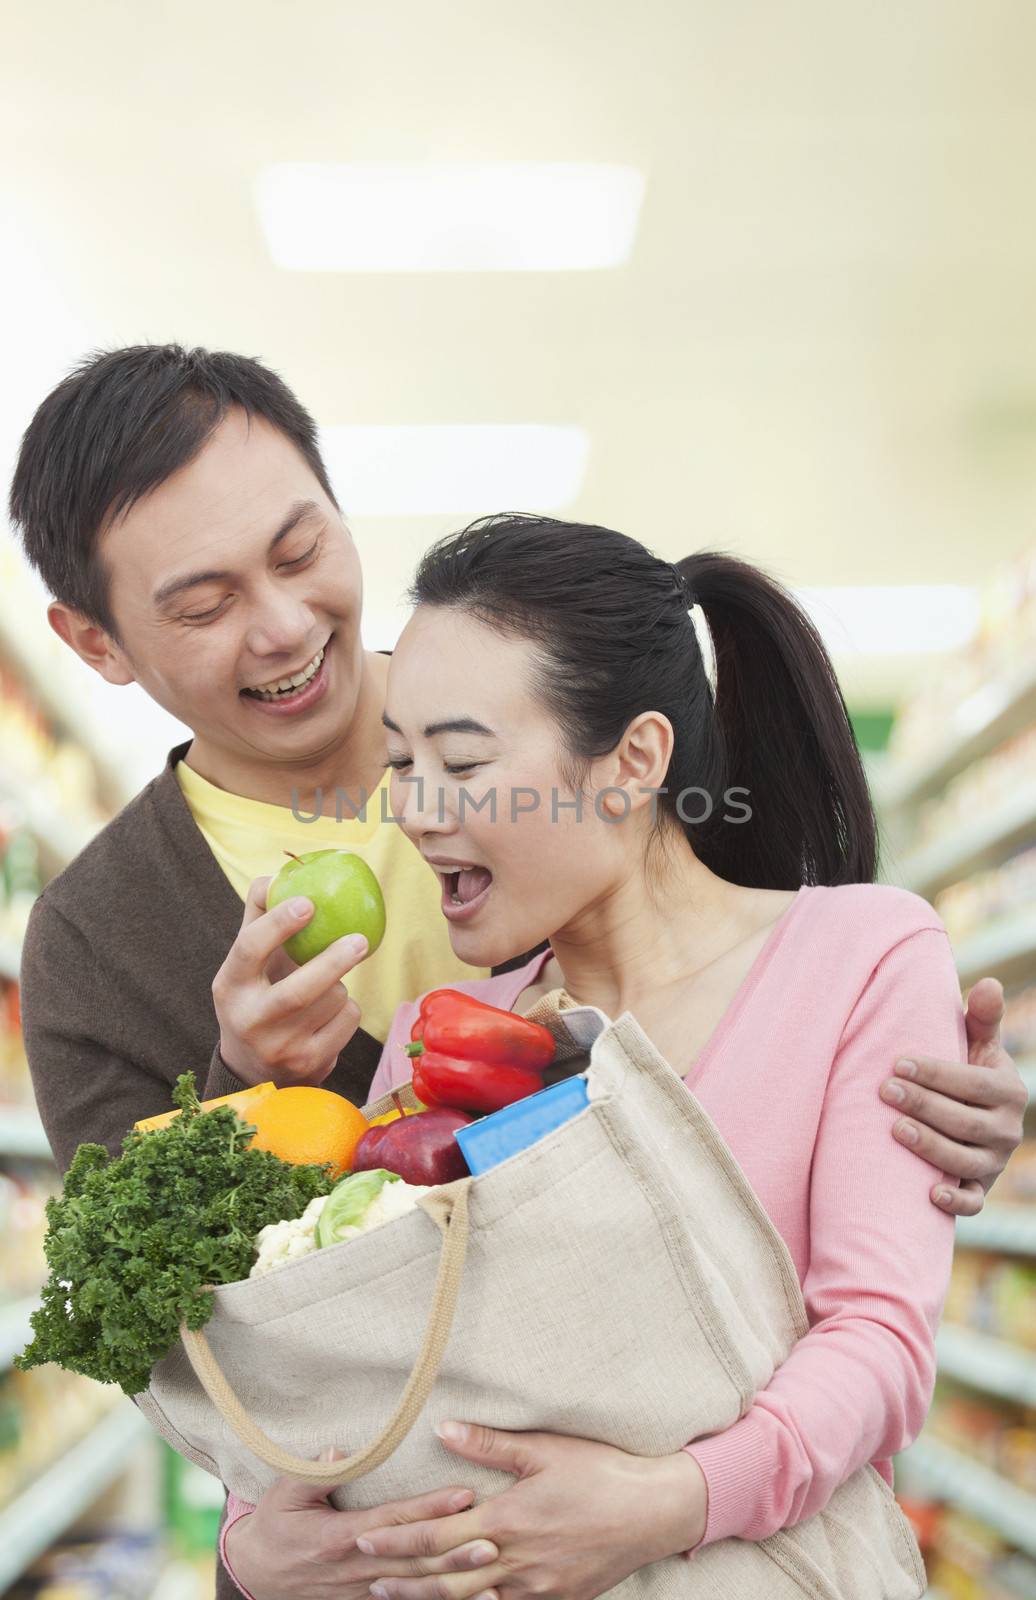 Man Feeding Woman Apple in Grocery Store by XiXinXing